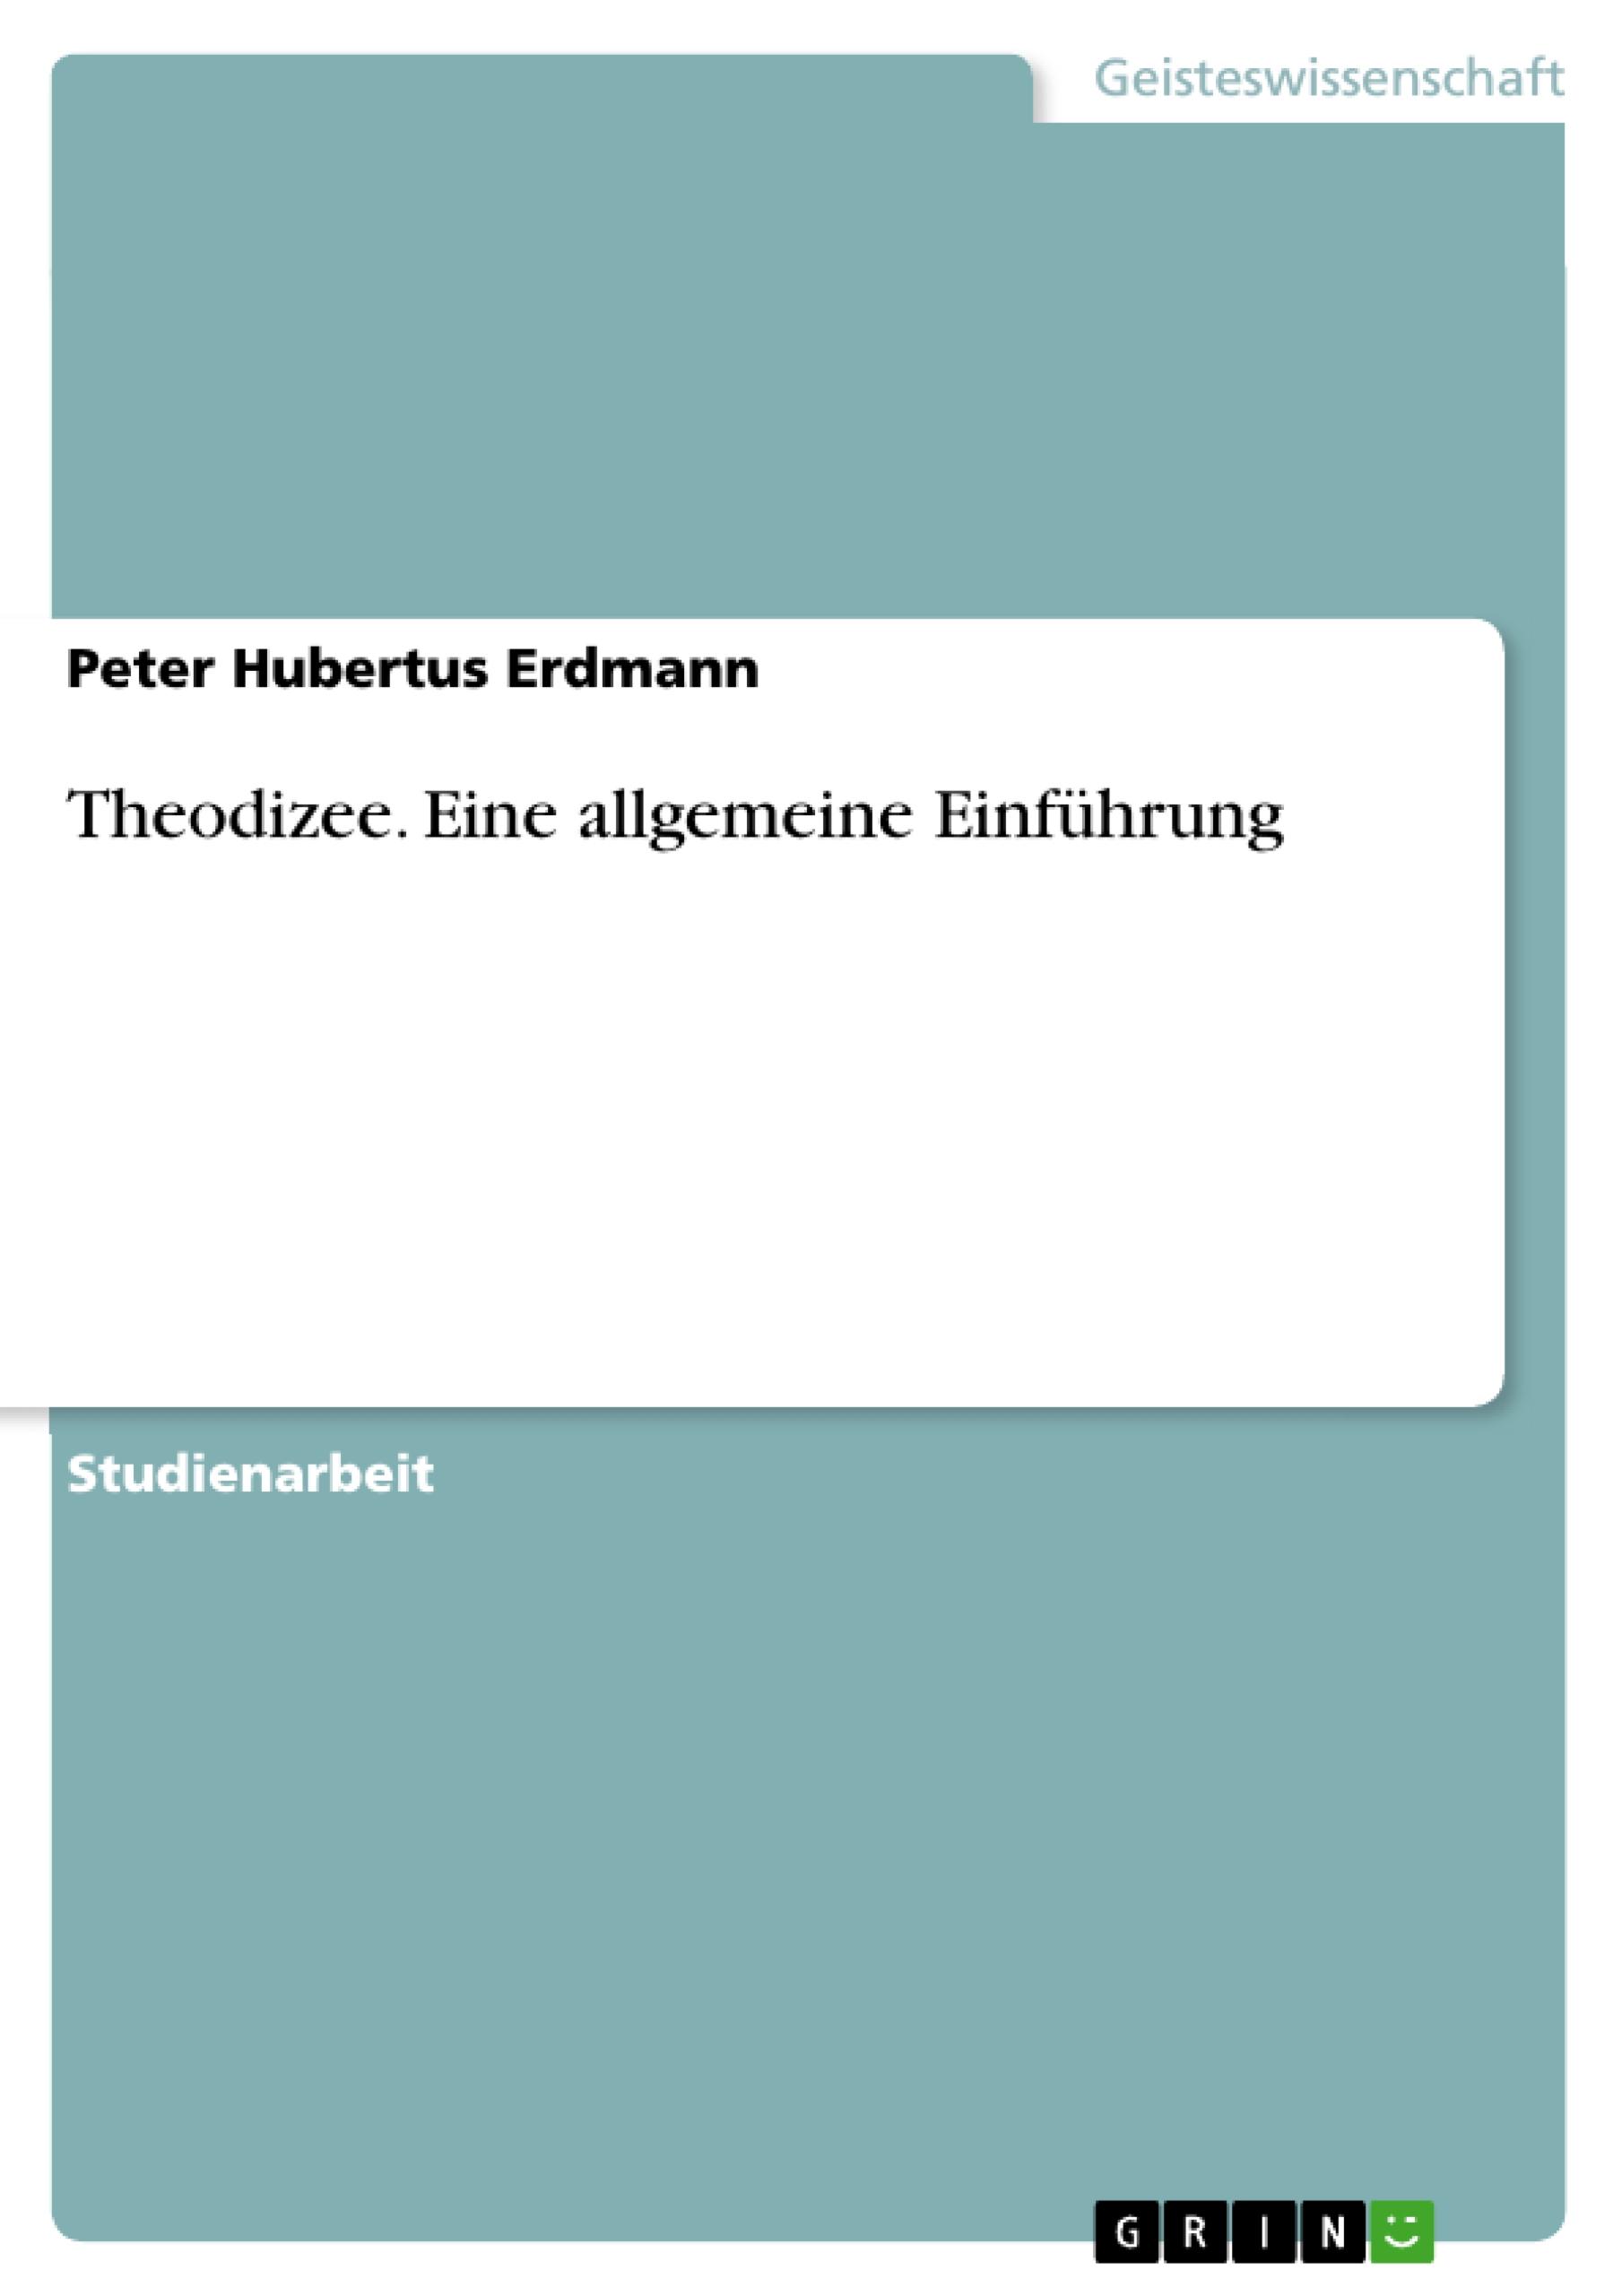 Theodizee - Erdmann, Peter Hubertus